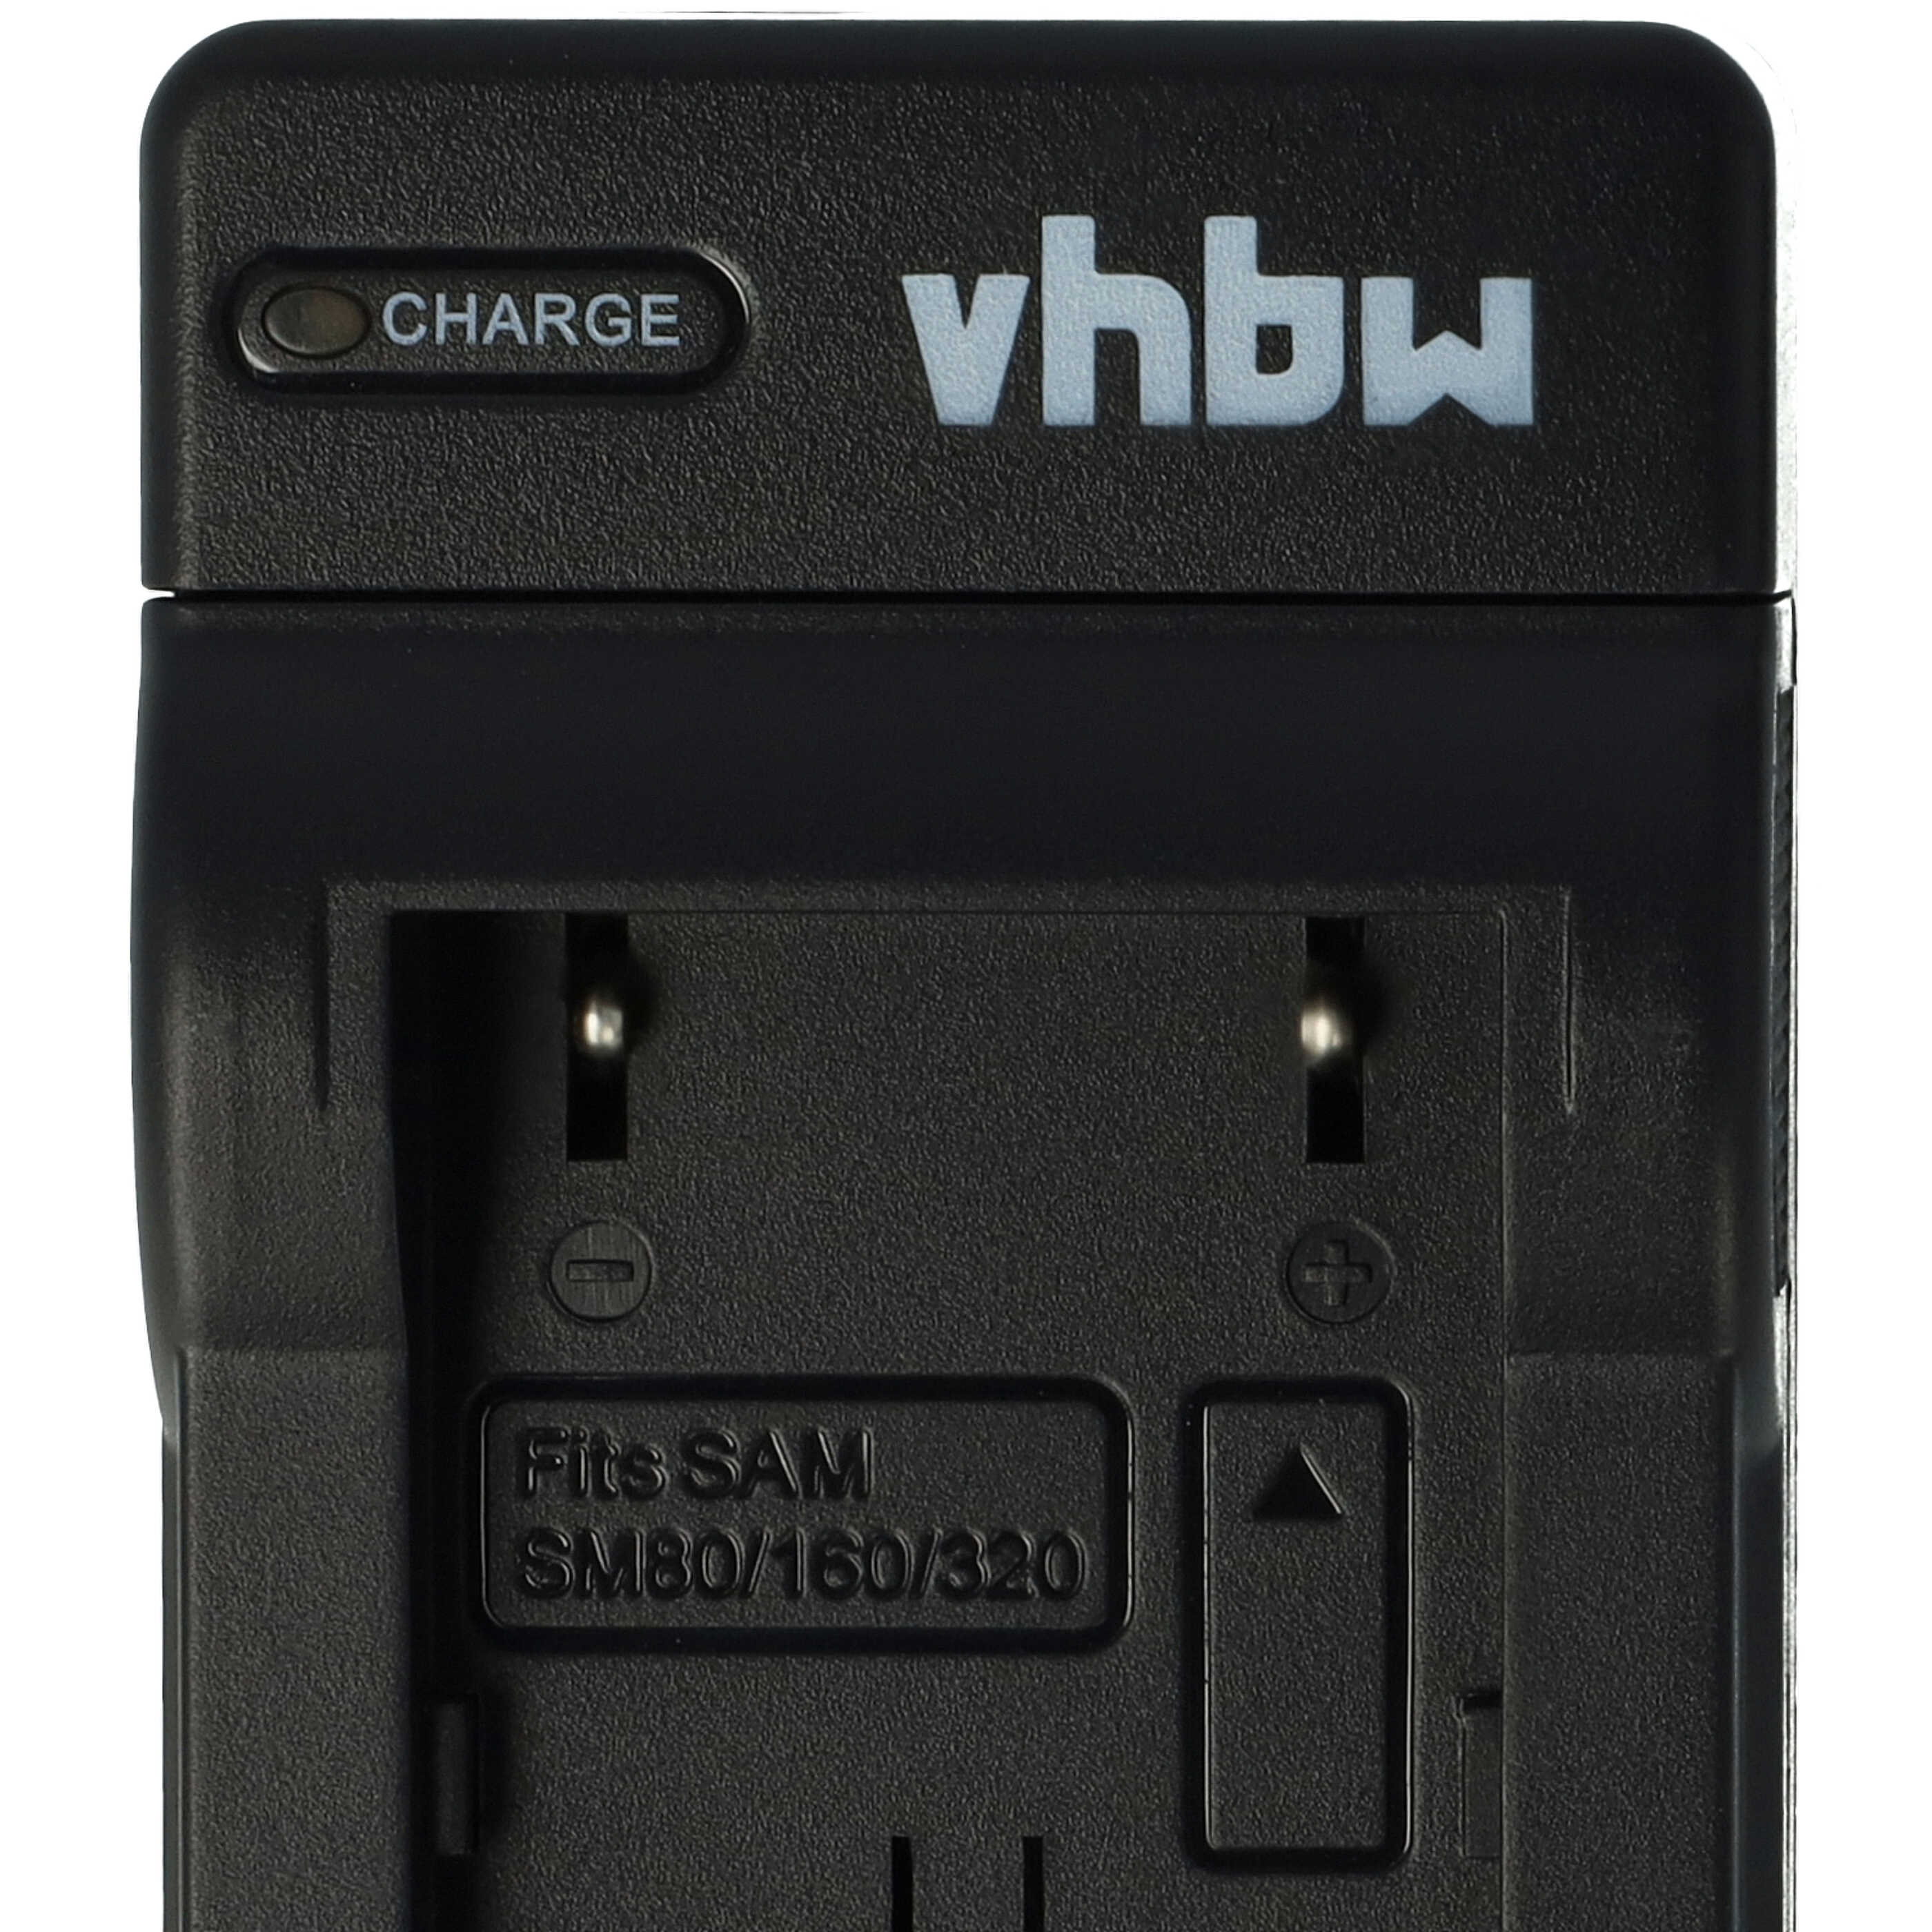 Chargeur pour appareil photo Samsung SB-LSM160 